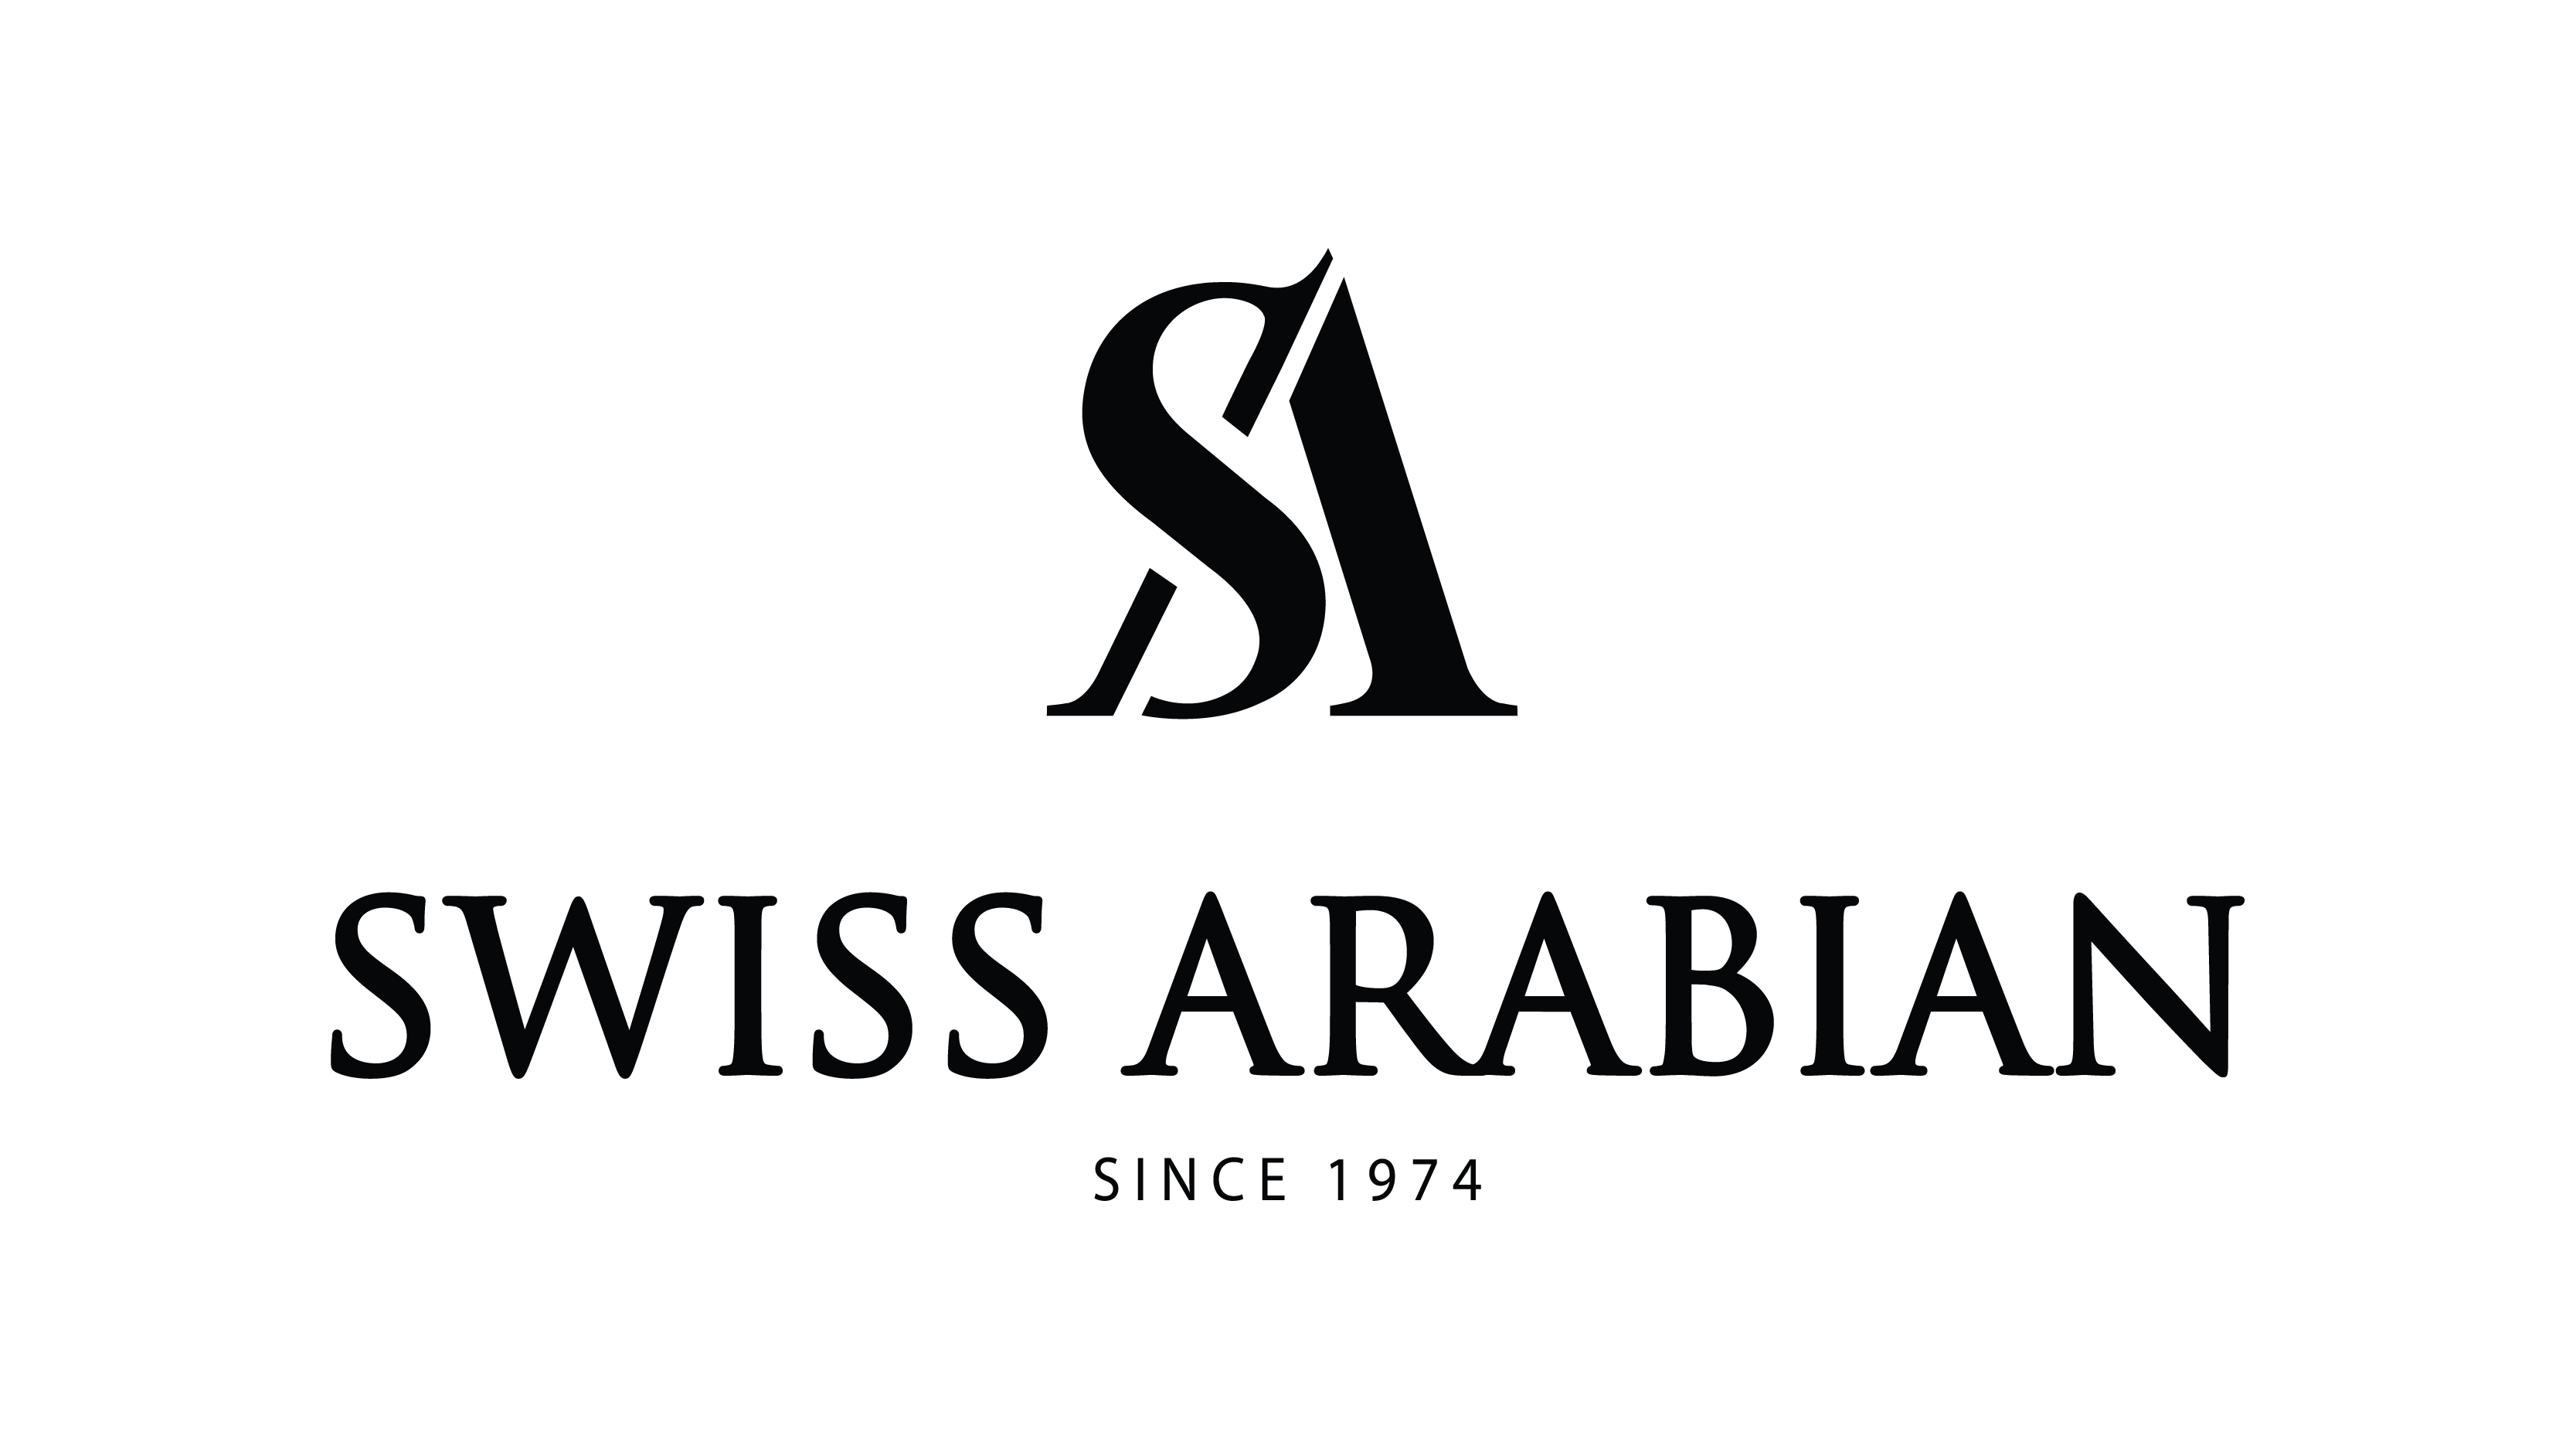 Swiss Arabian logo